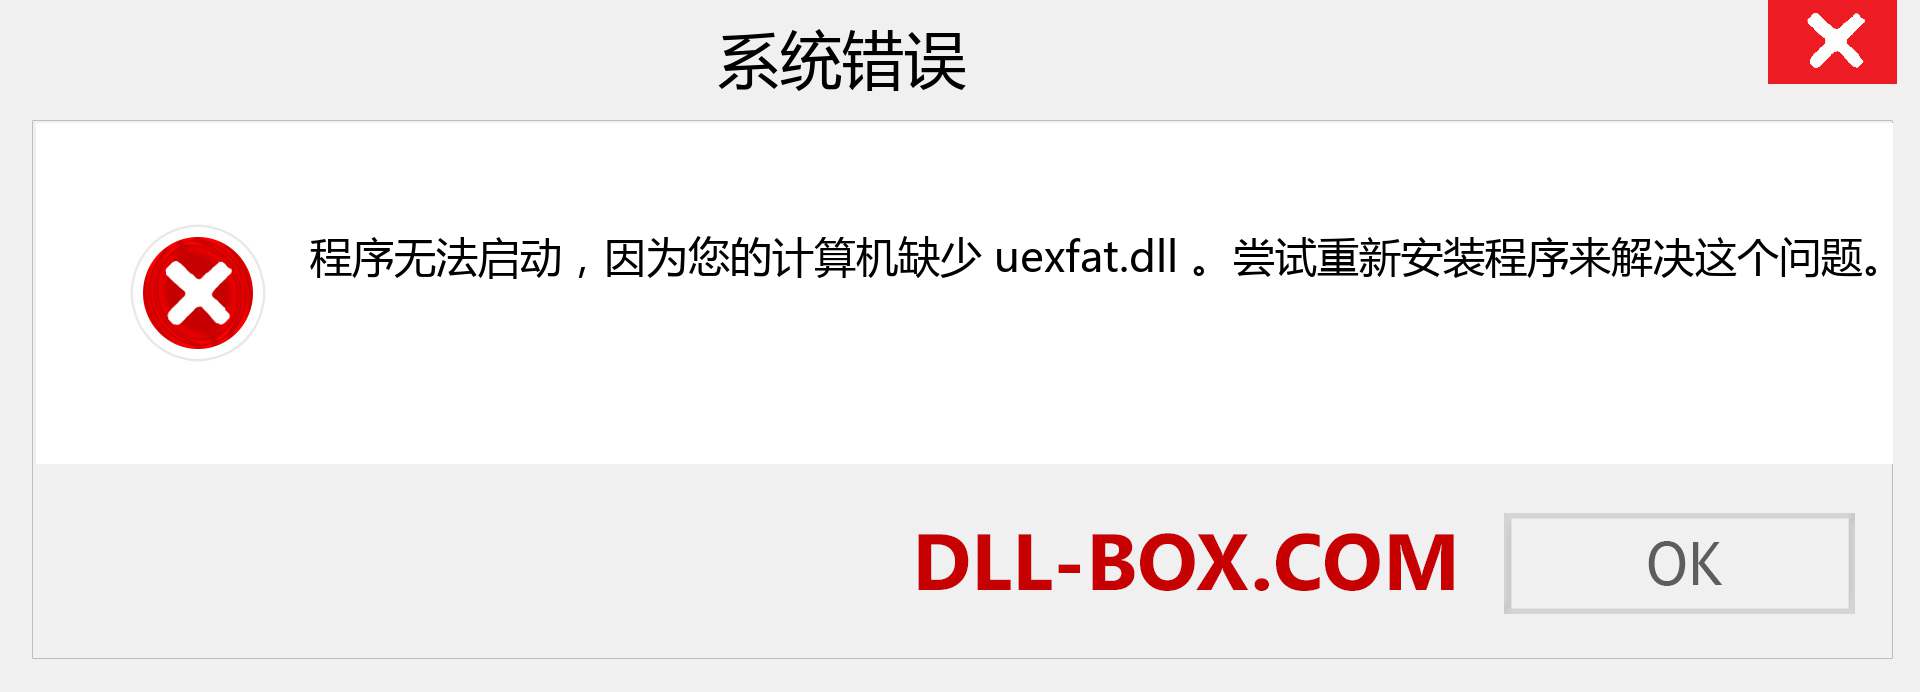 uexfat.dll 文件丢失？。 适用于 Windows 7、8、10 的下载 - 修复 Windows、照片、图像上的 uexfat dll 丢失错误